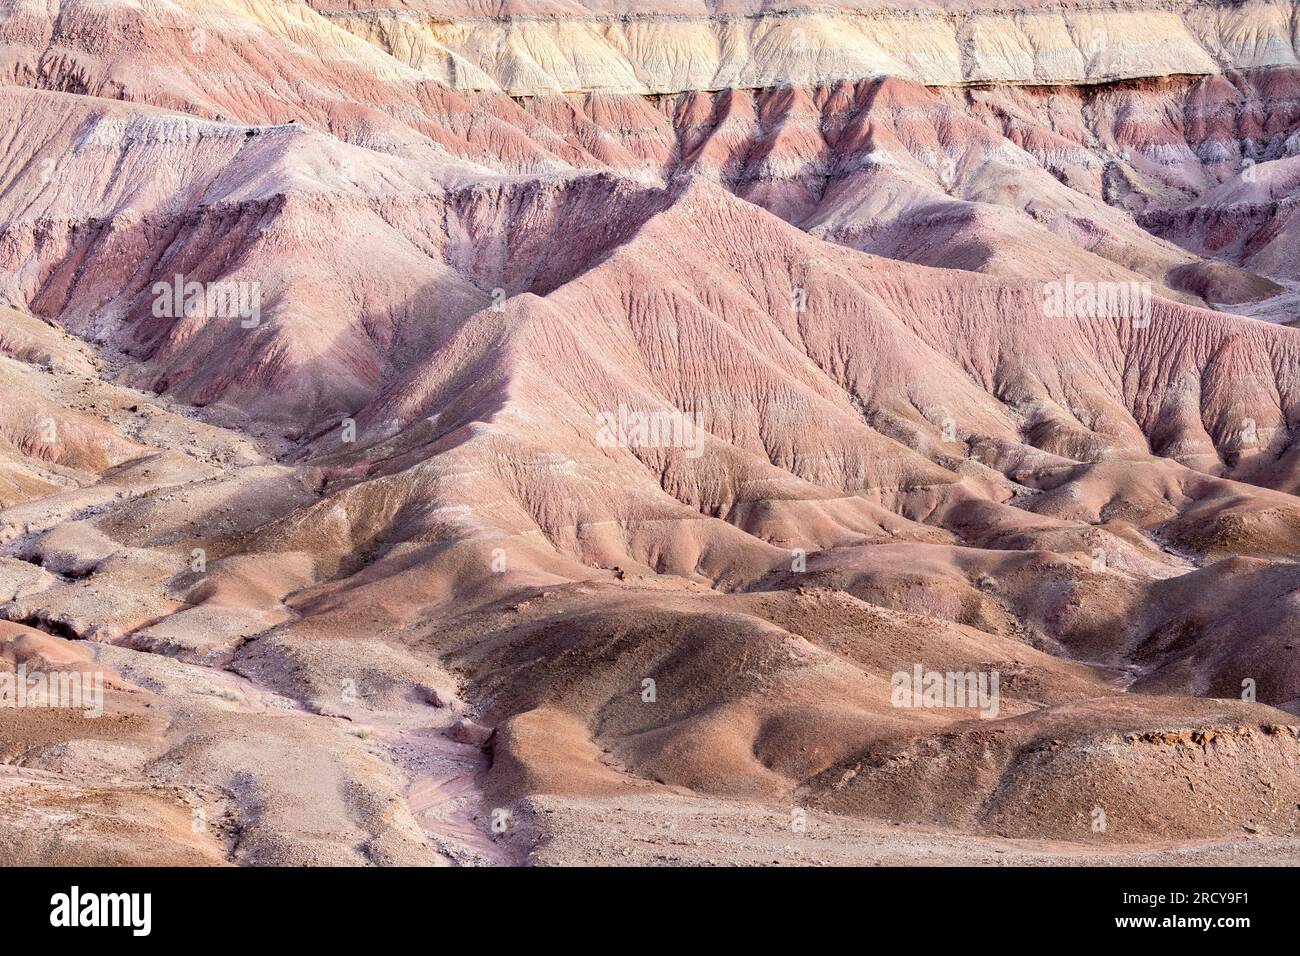 Caractéristiques érosionnelles, mesas, collines et paysage désertique, le désert peint, près de tuba City, AZ, USA, par Dominique Braud/Dembinsky photo Assoc Banque D'Images